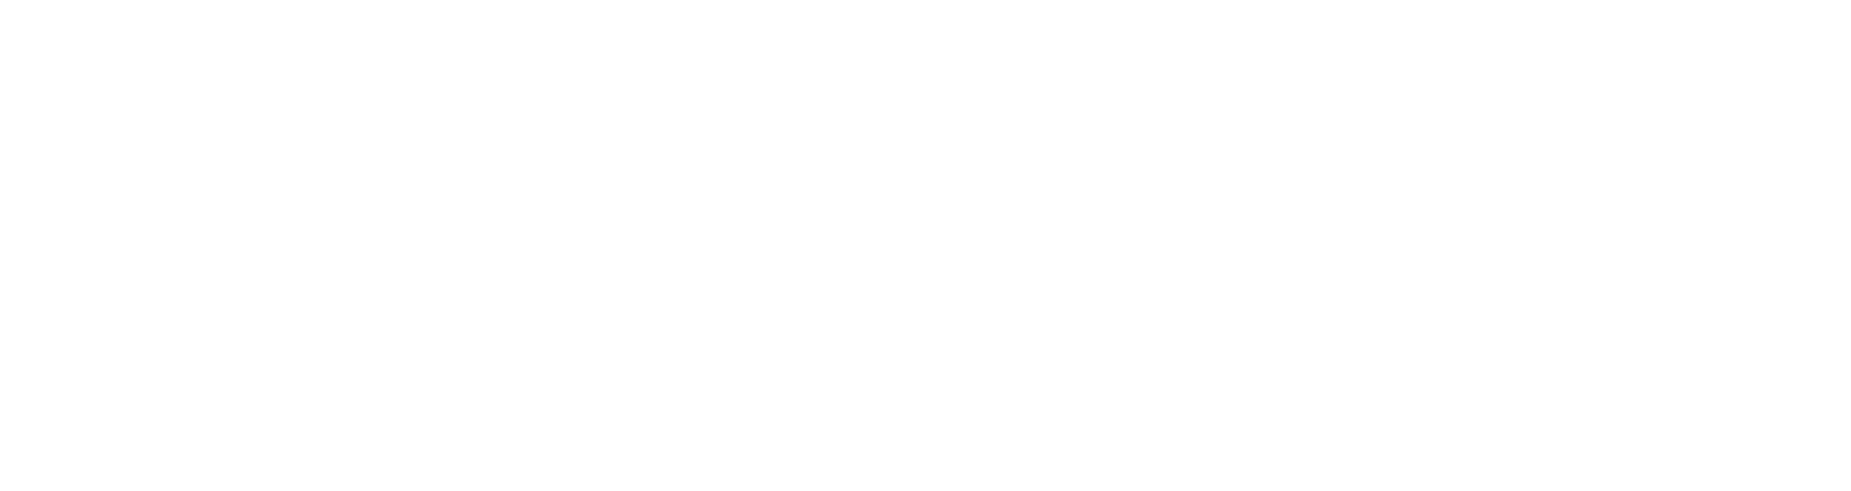 Runway Magazine logo 2021